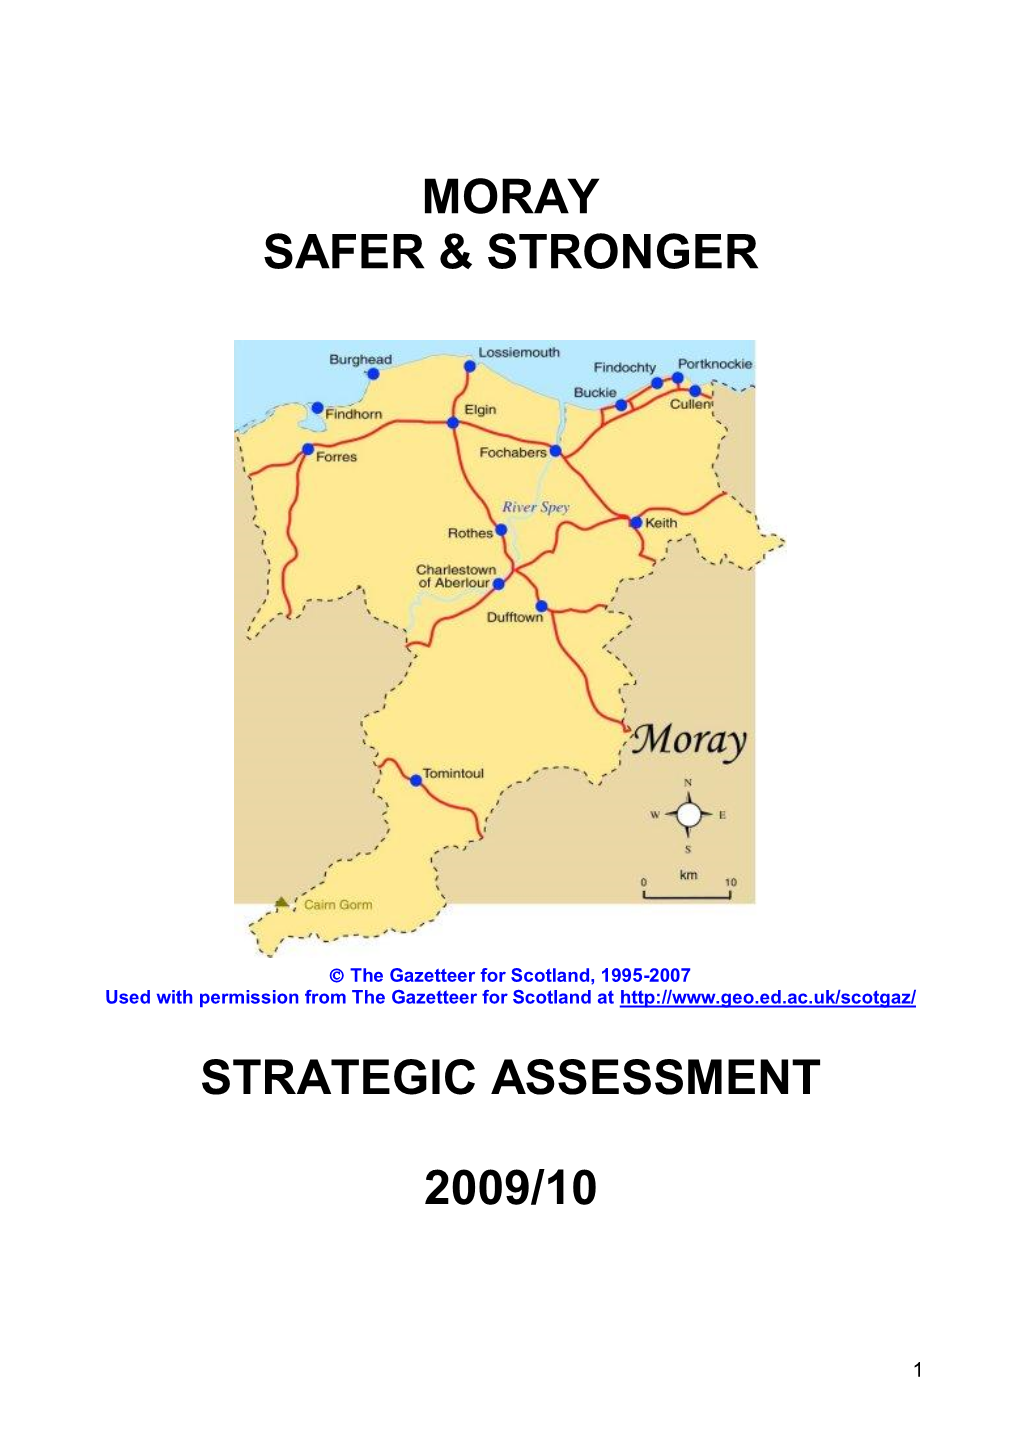 Moray Safer & Stronger Strategic Assessment 2009/10